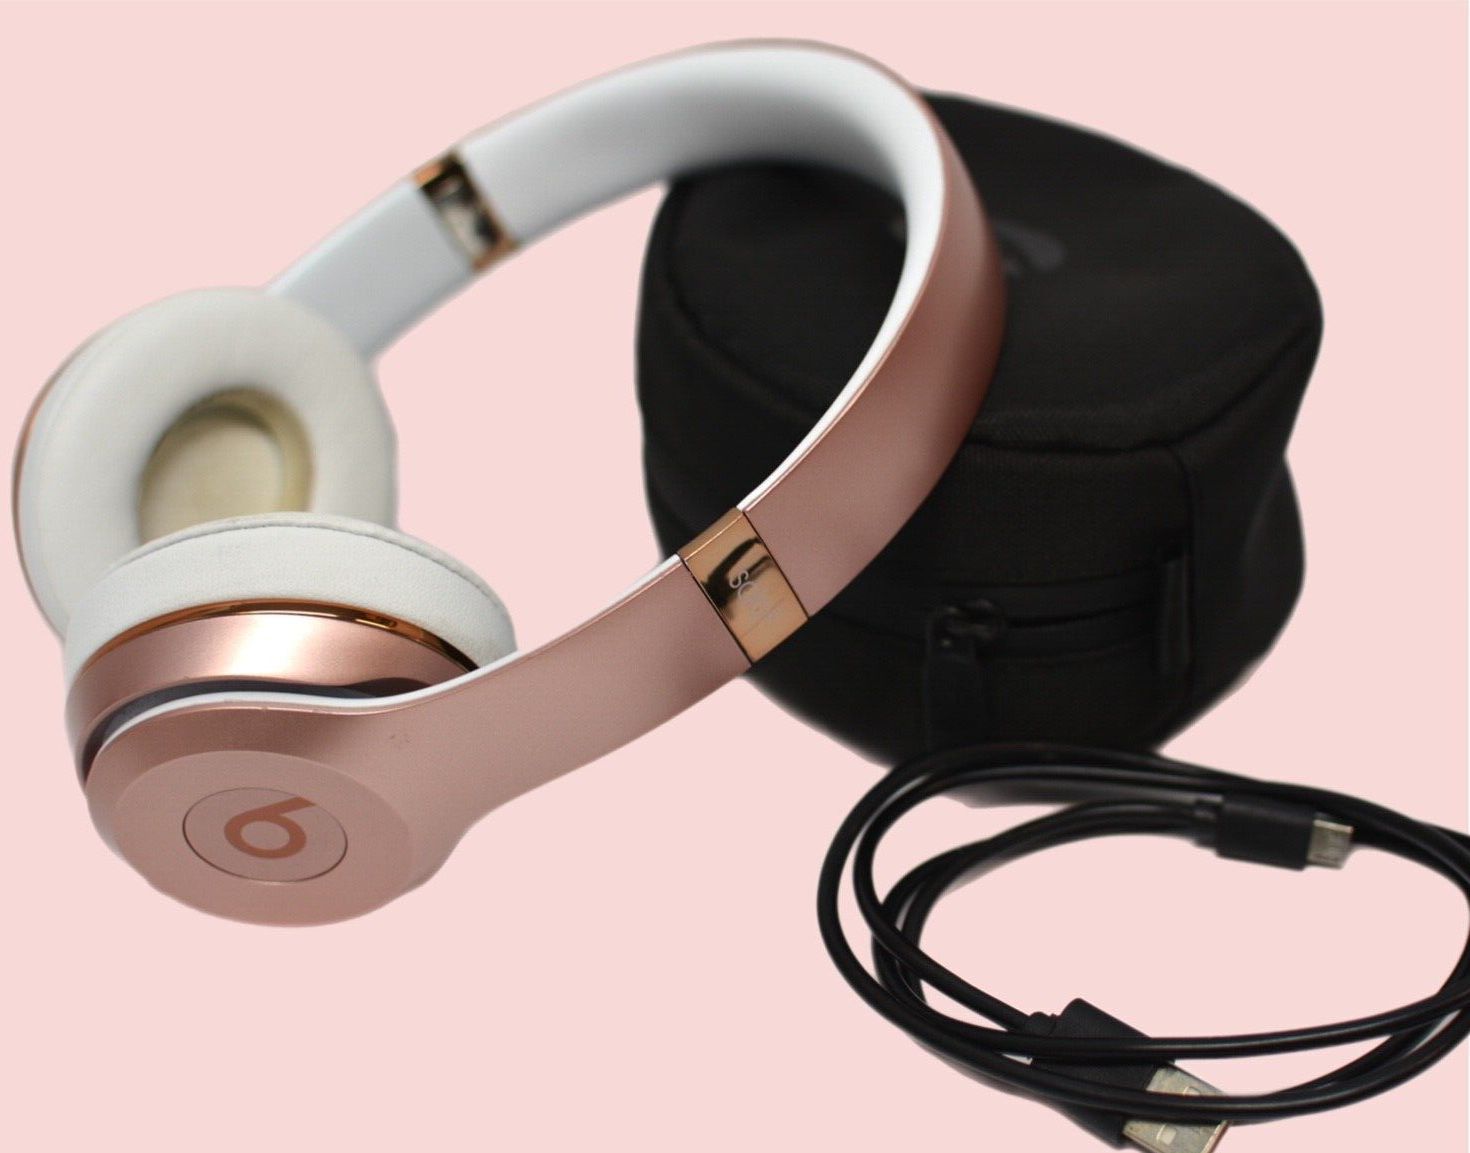 Beats by Dr. Dre Beats Solo3 Wireless On-Ear Headphones - Rose